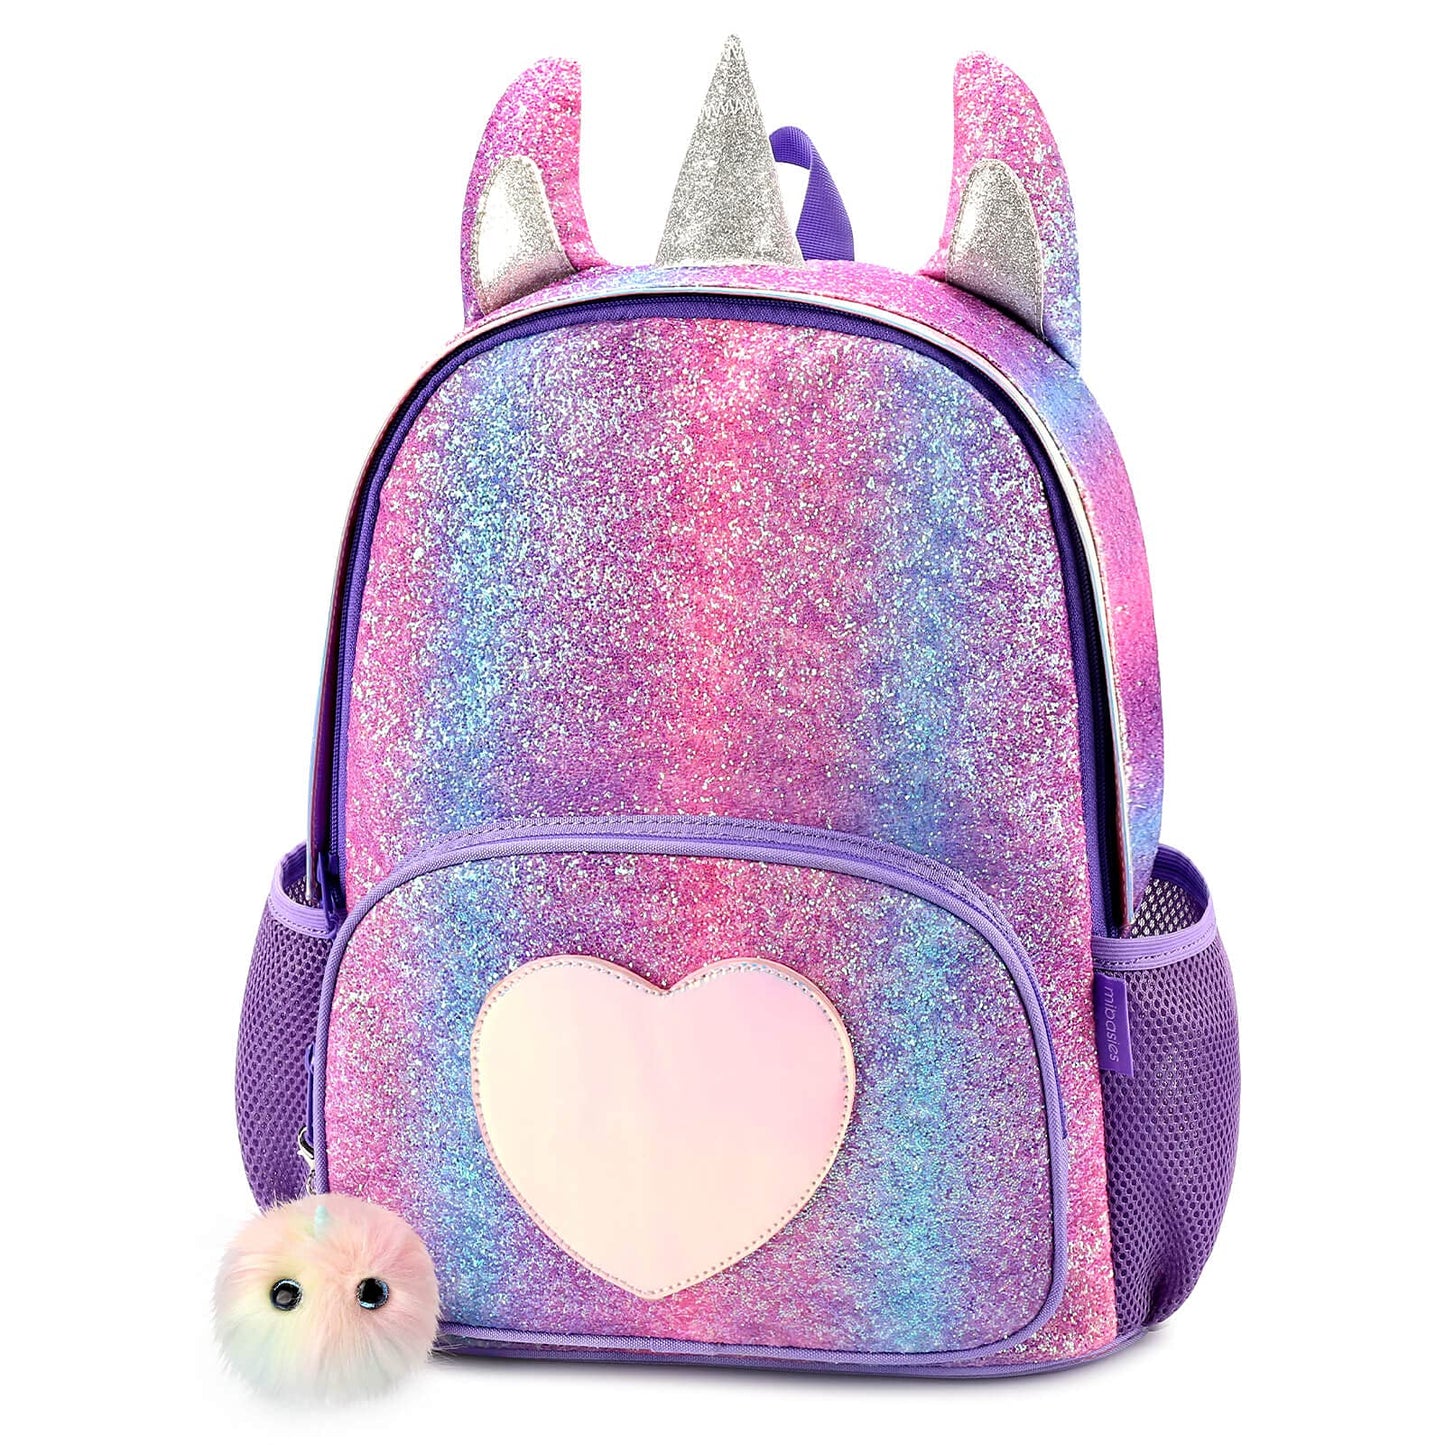 Shining Unicorn schoolbag Mibasies Purple Rainbow1 